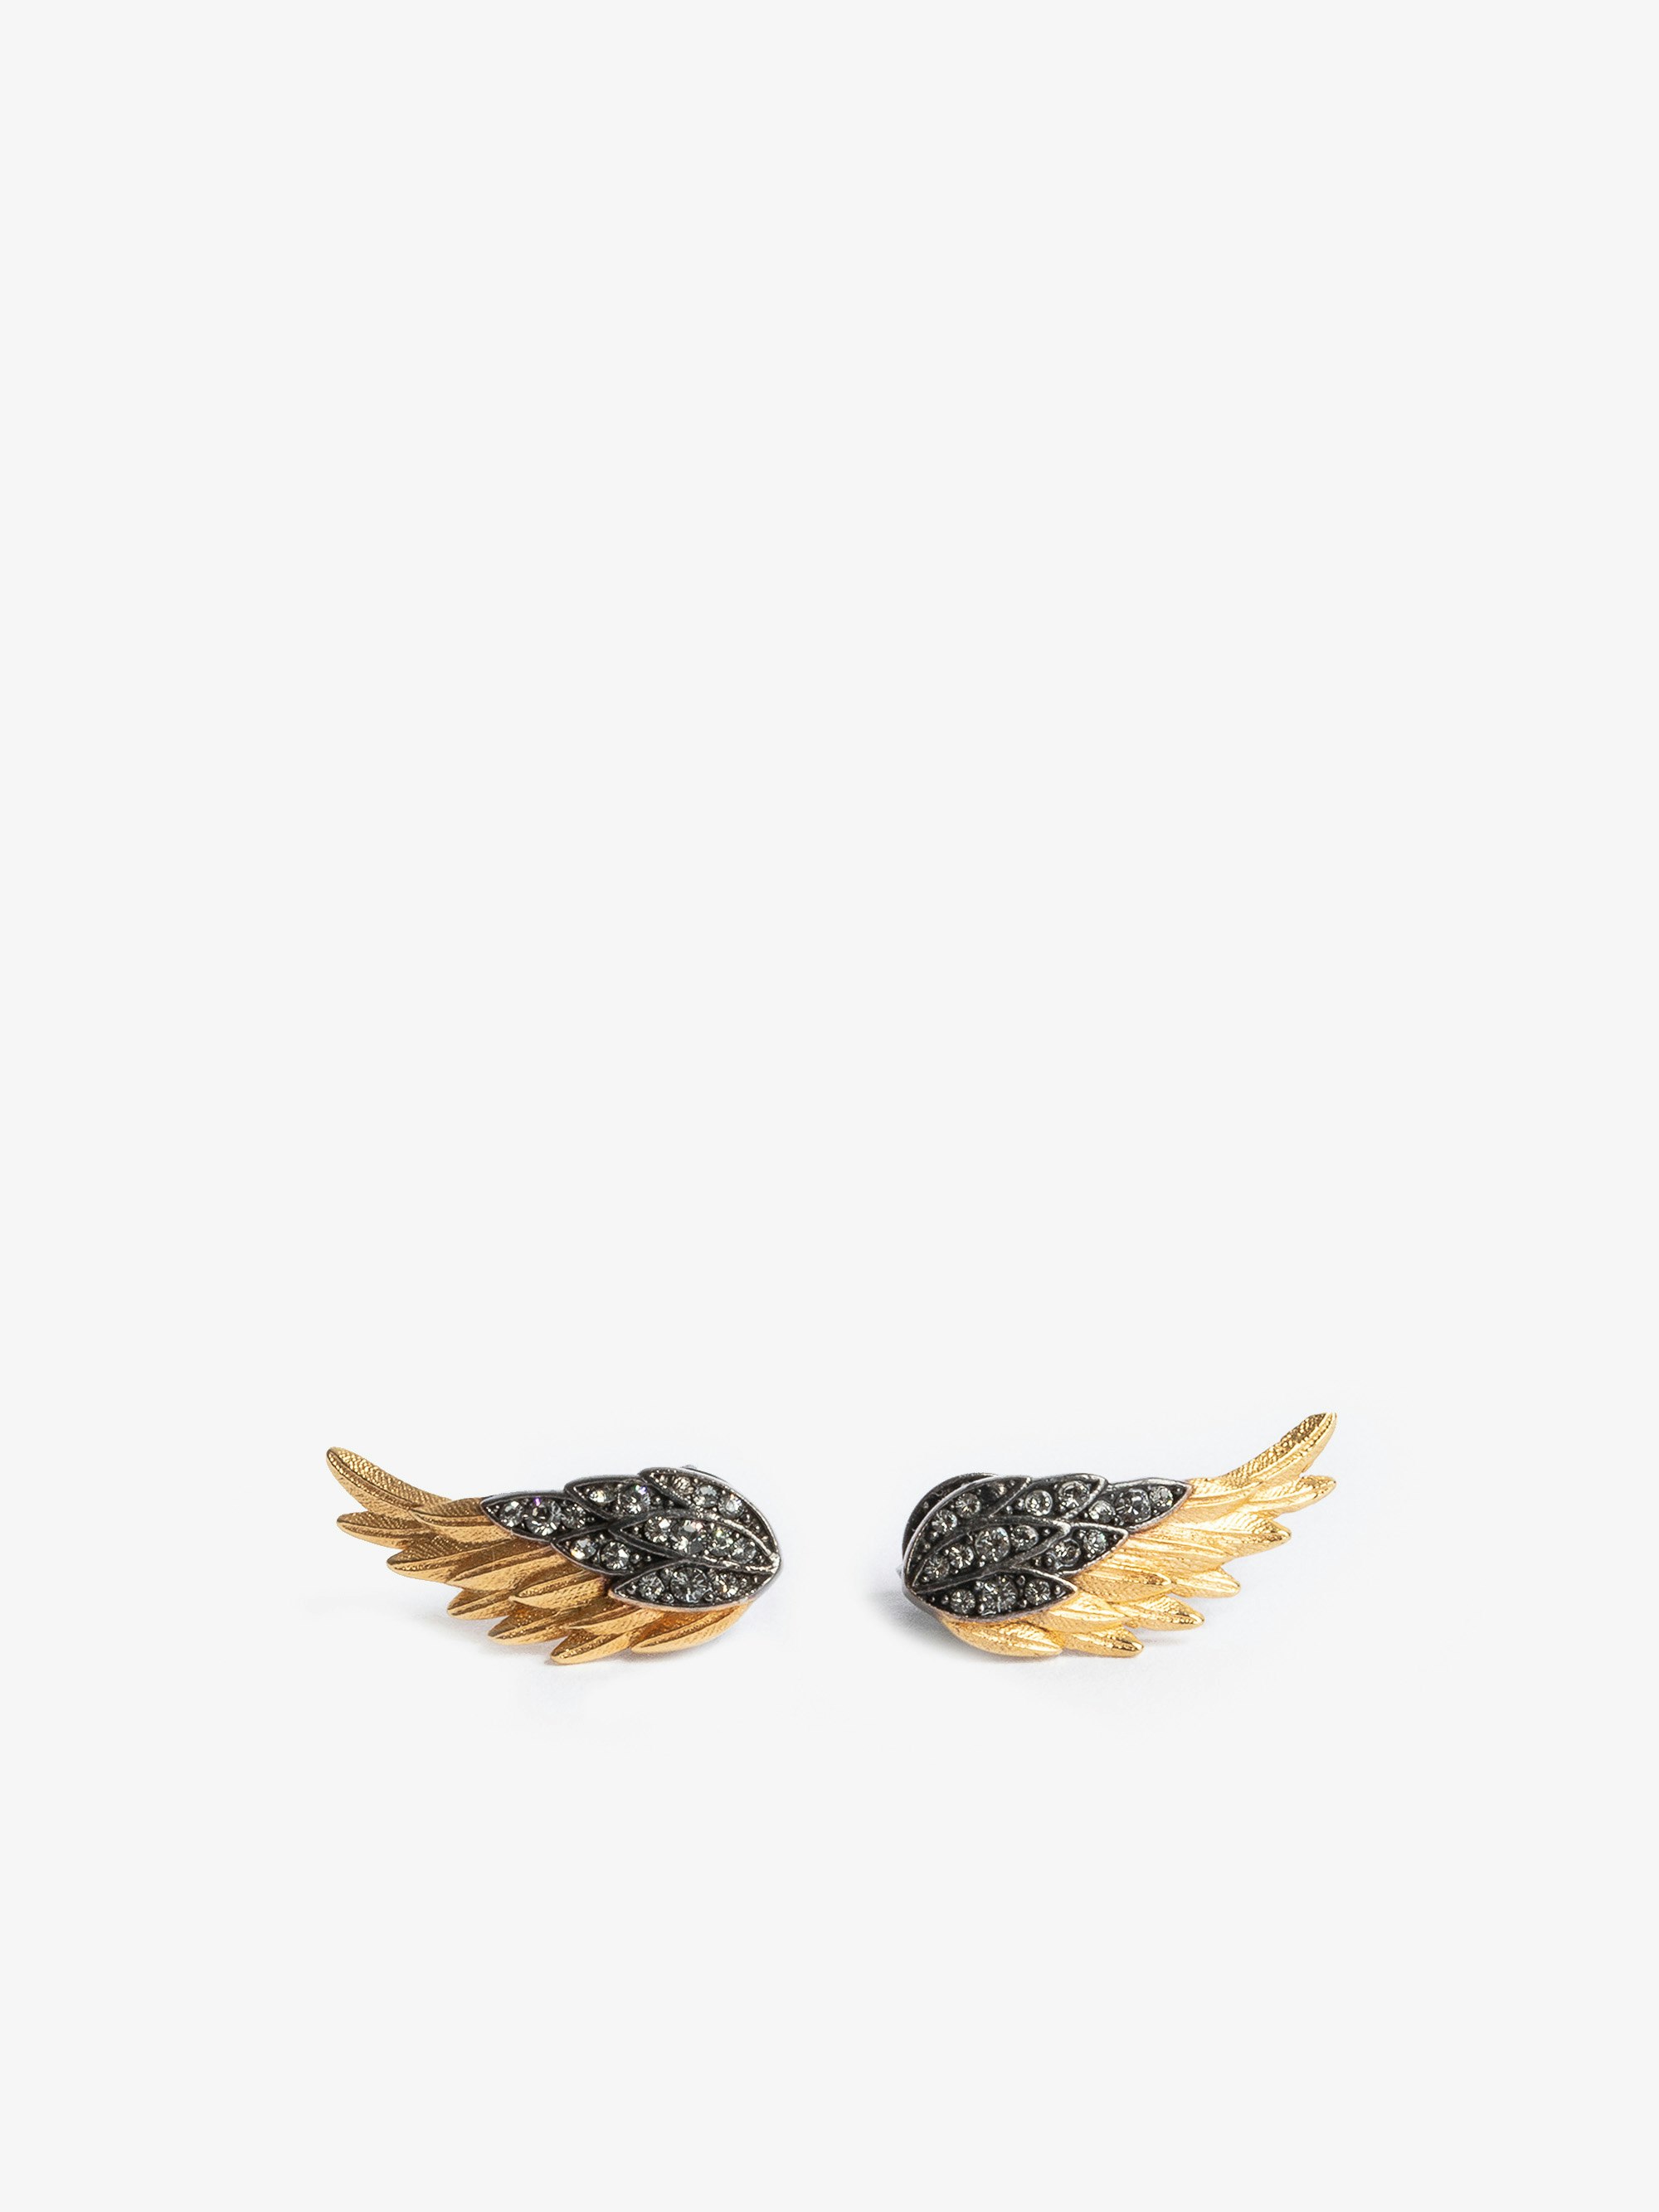 Boucles D'Oreilles Rock Feather - Boucles d'oreilles en forme d'ailes en laiton noirci et doré serti de cristaux.